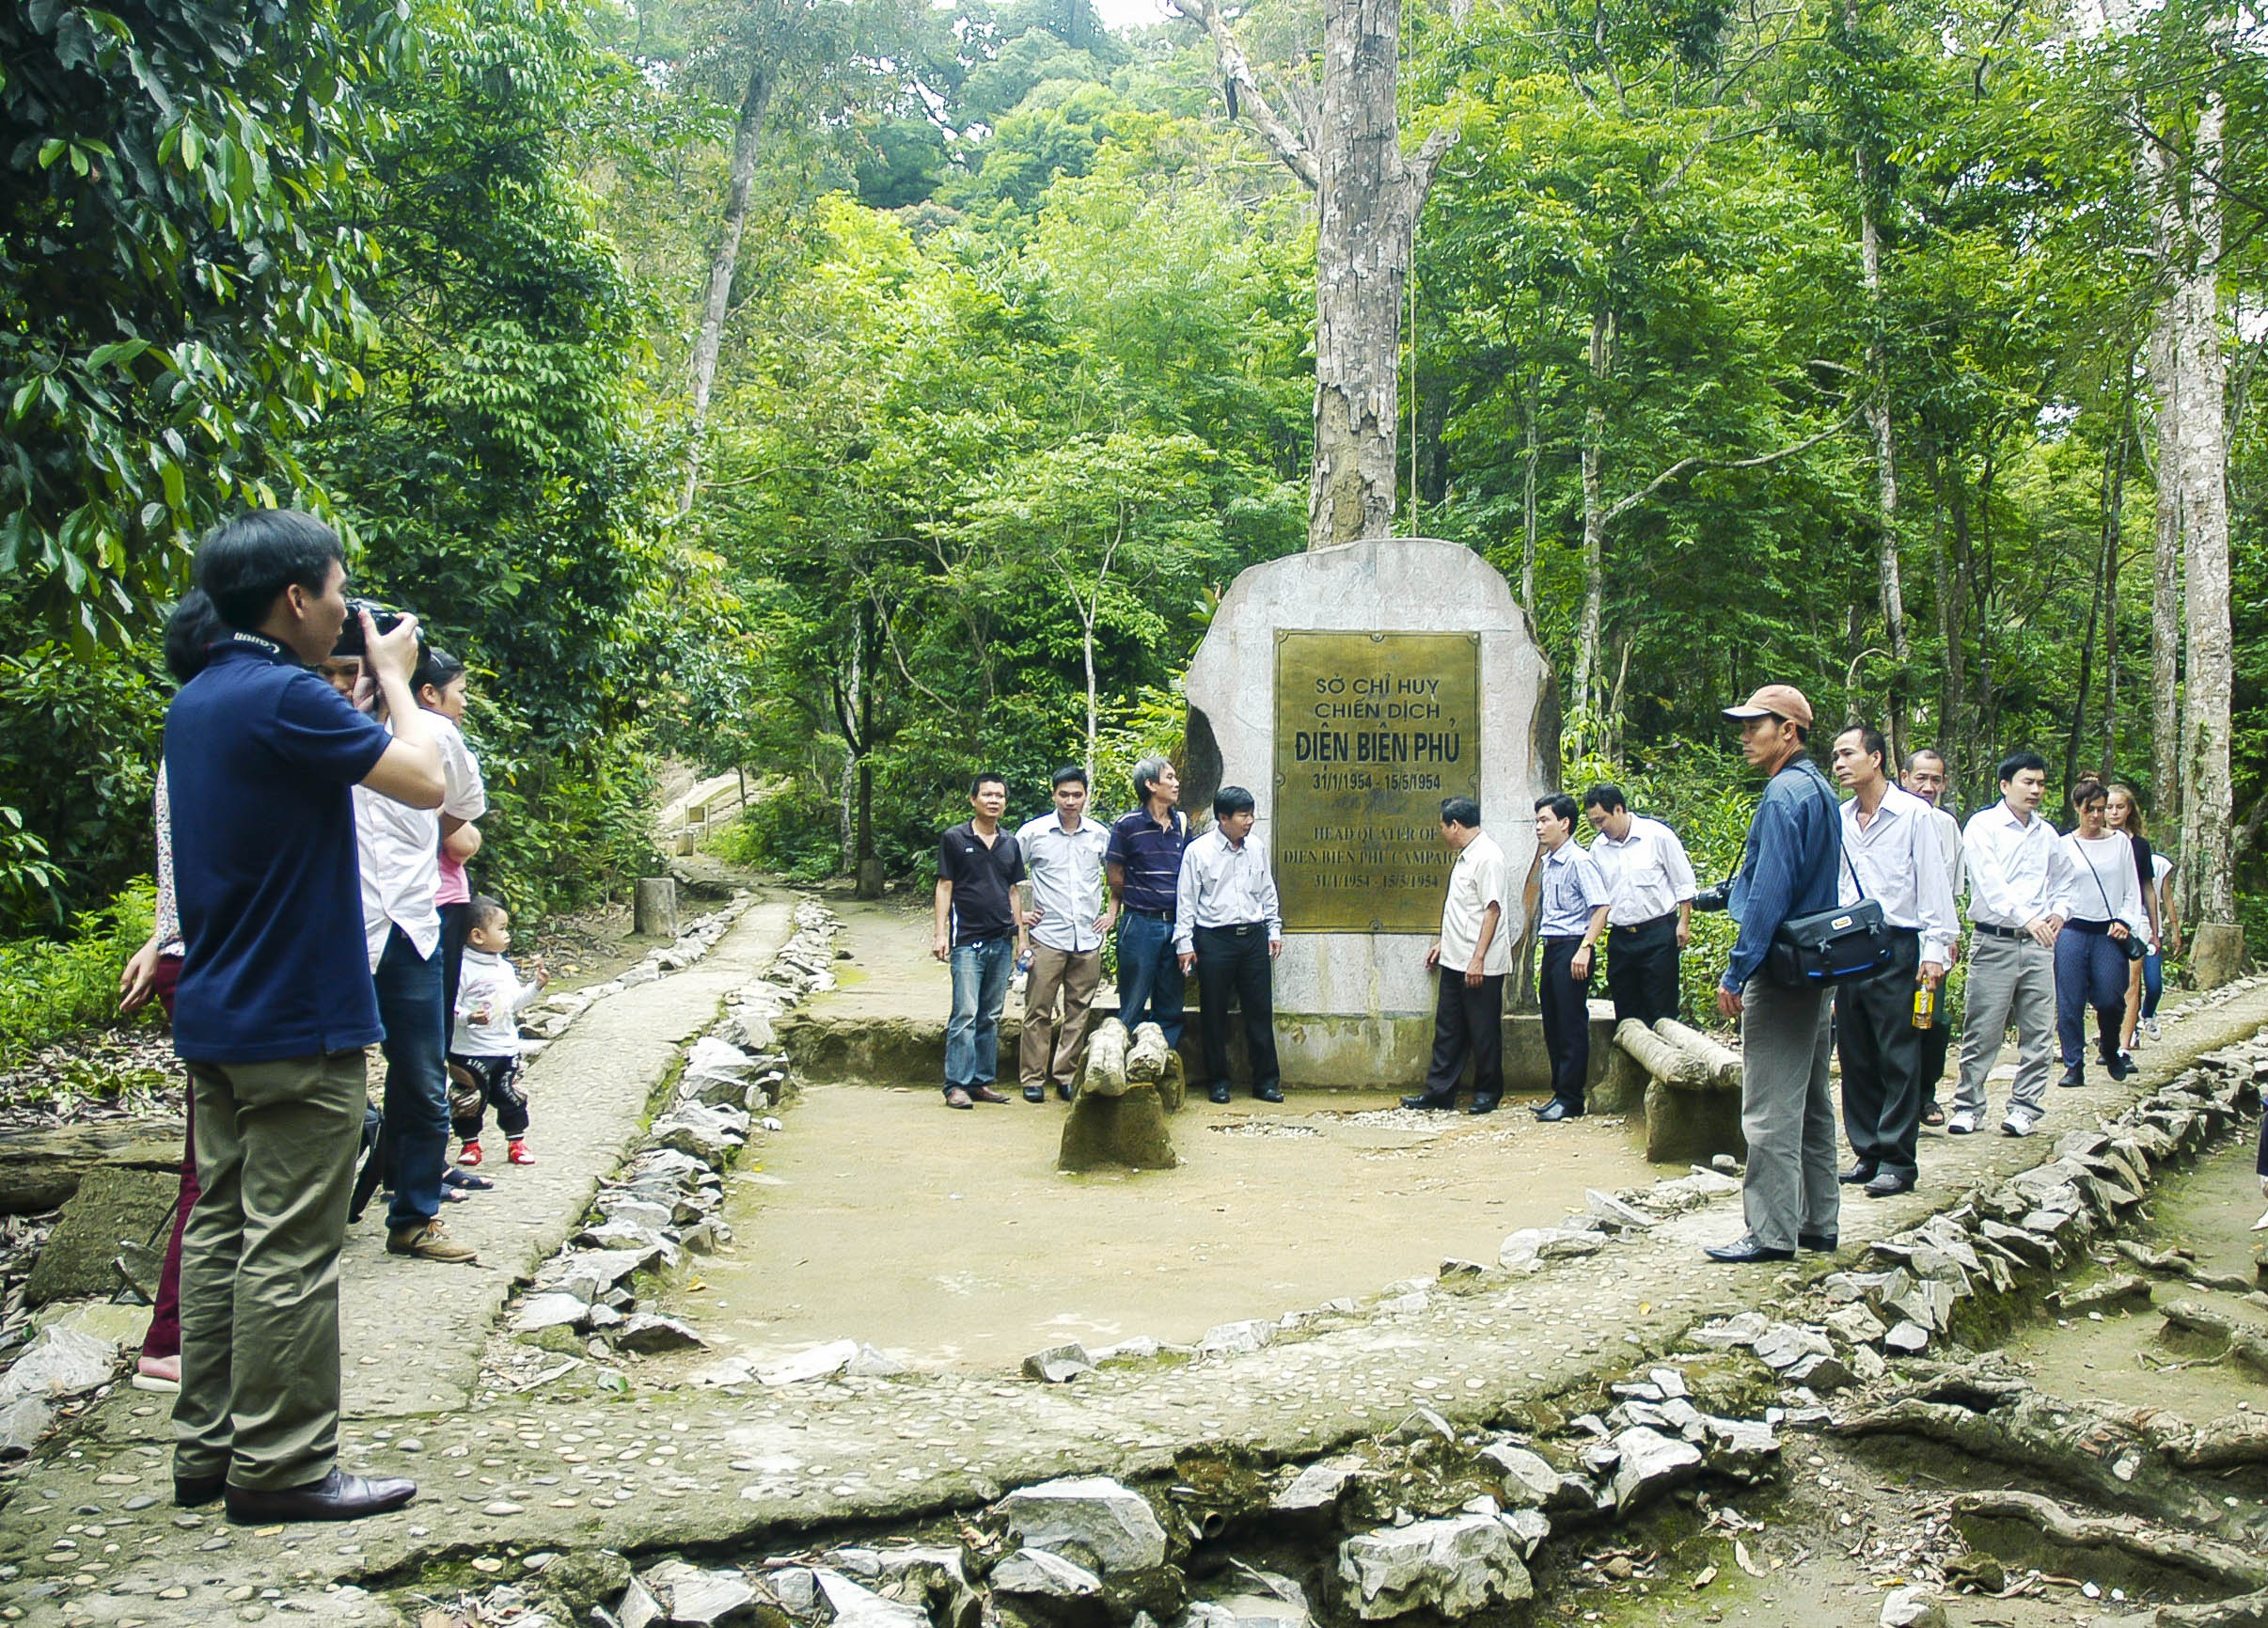 Đường vào khu di tích Sở Chỉ huy Chiến dịch Điện Biên Phủ tại xã Mường Phăng